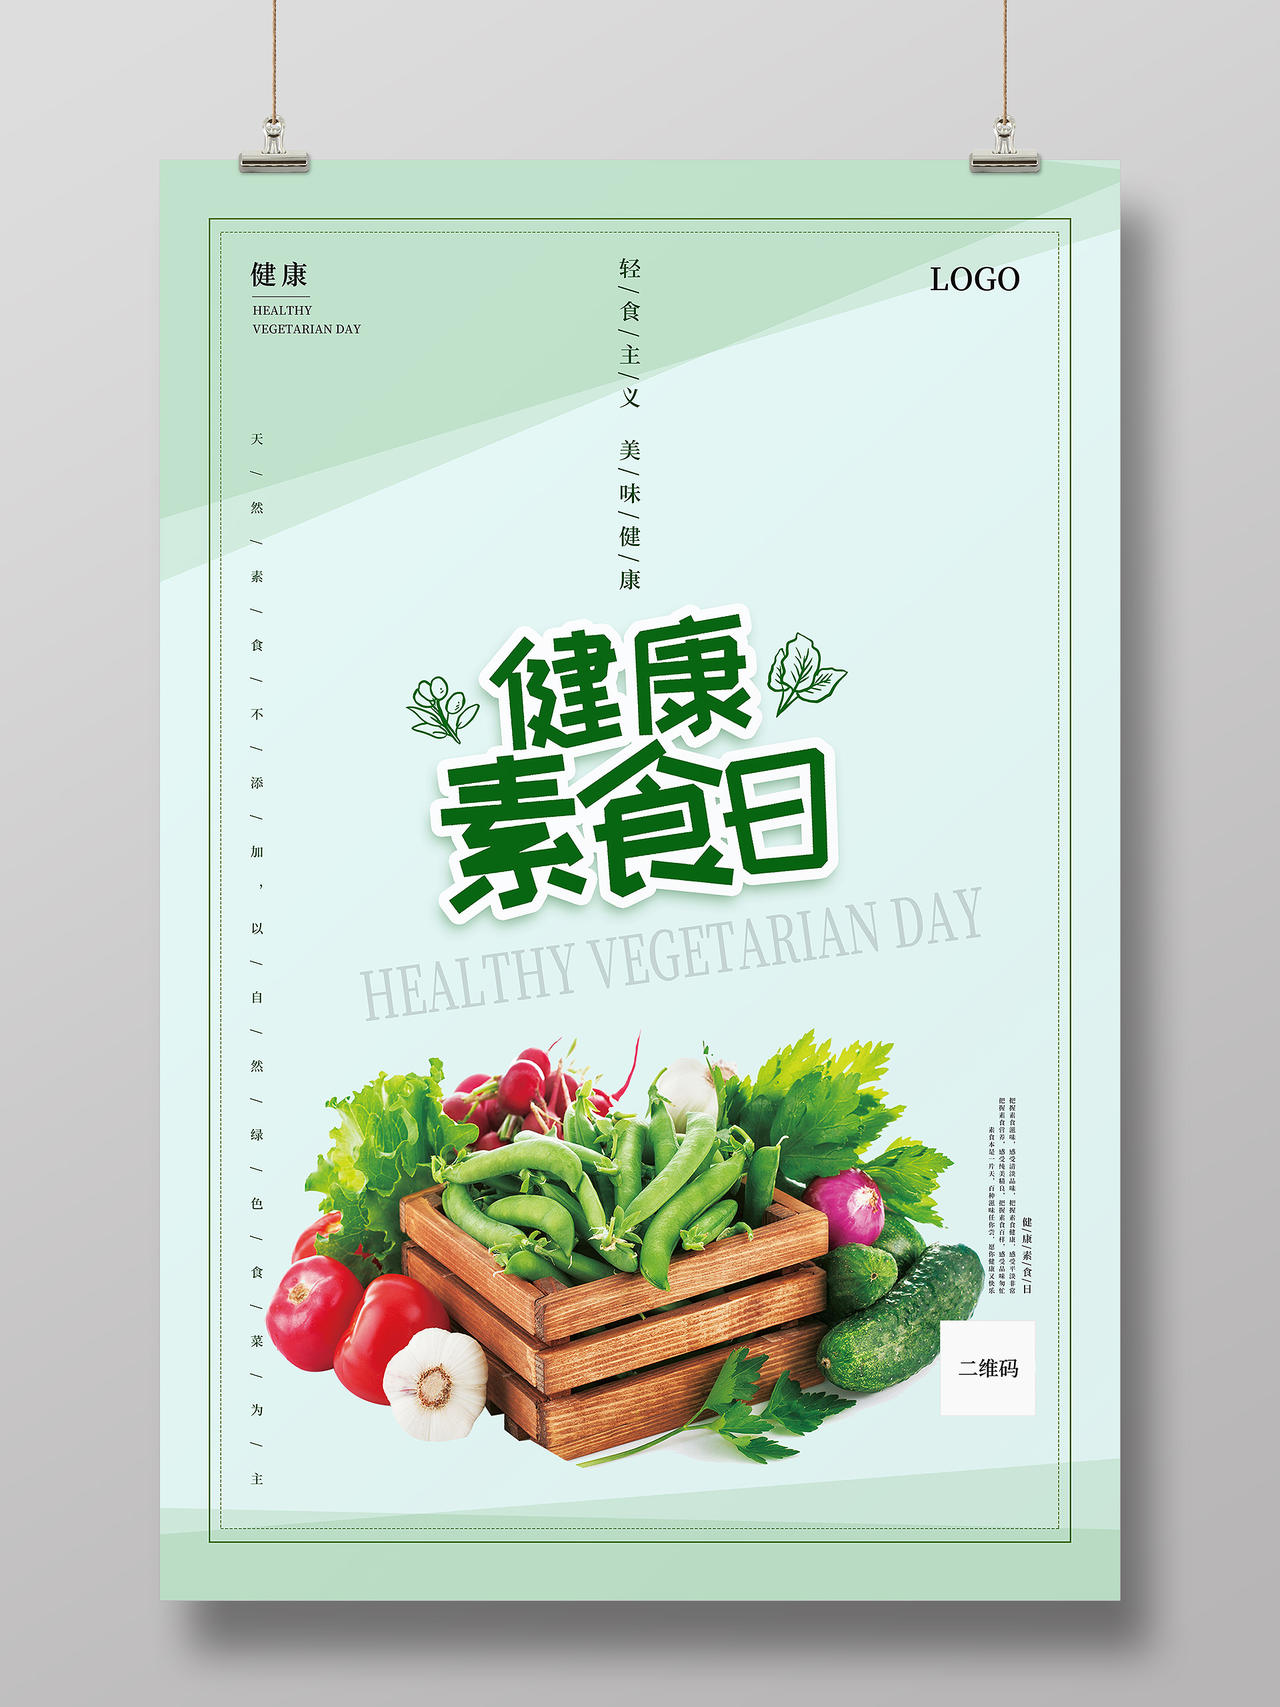 615健康素食日新鲜蔬菜海报